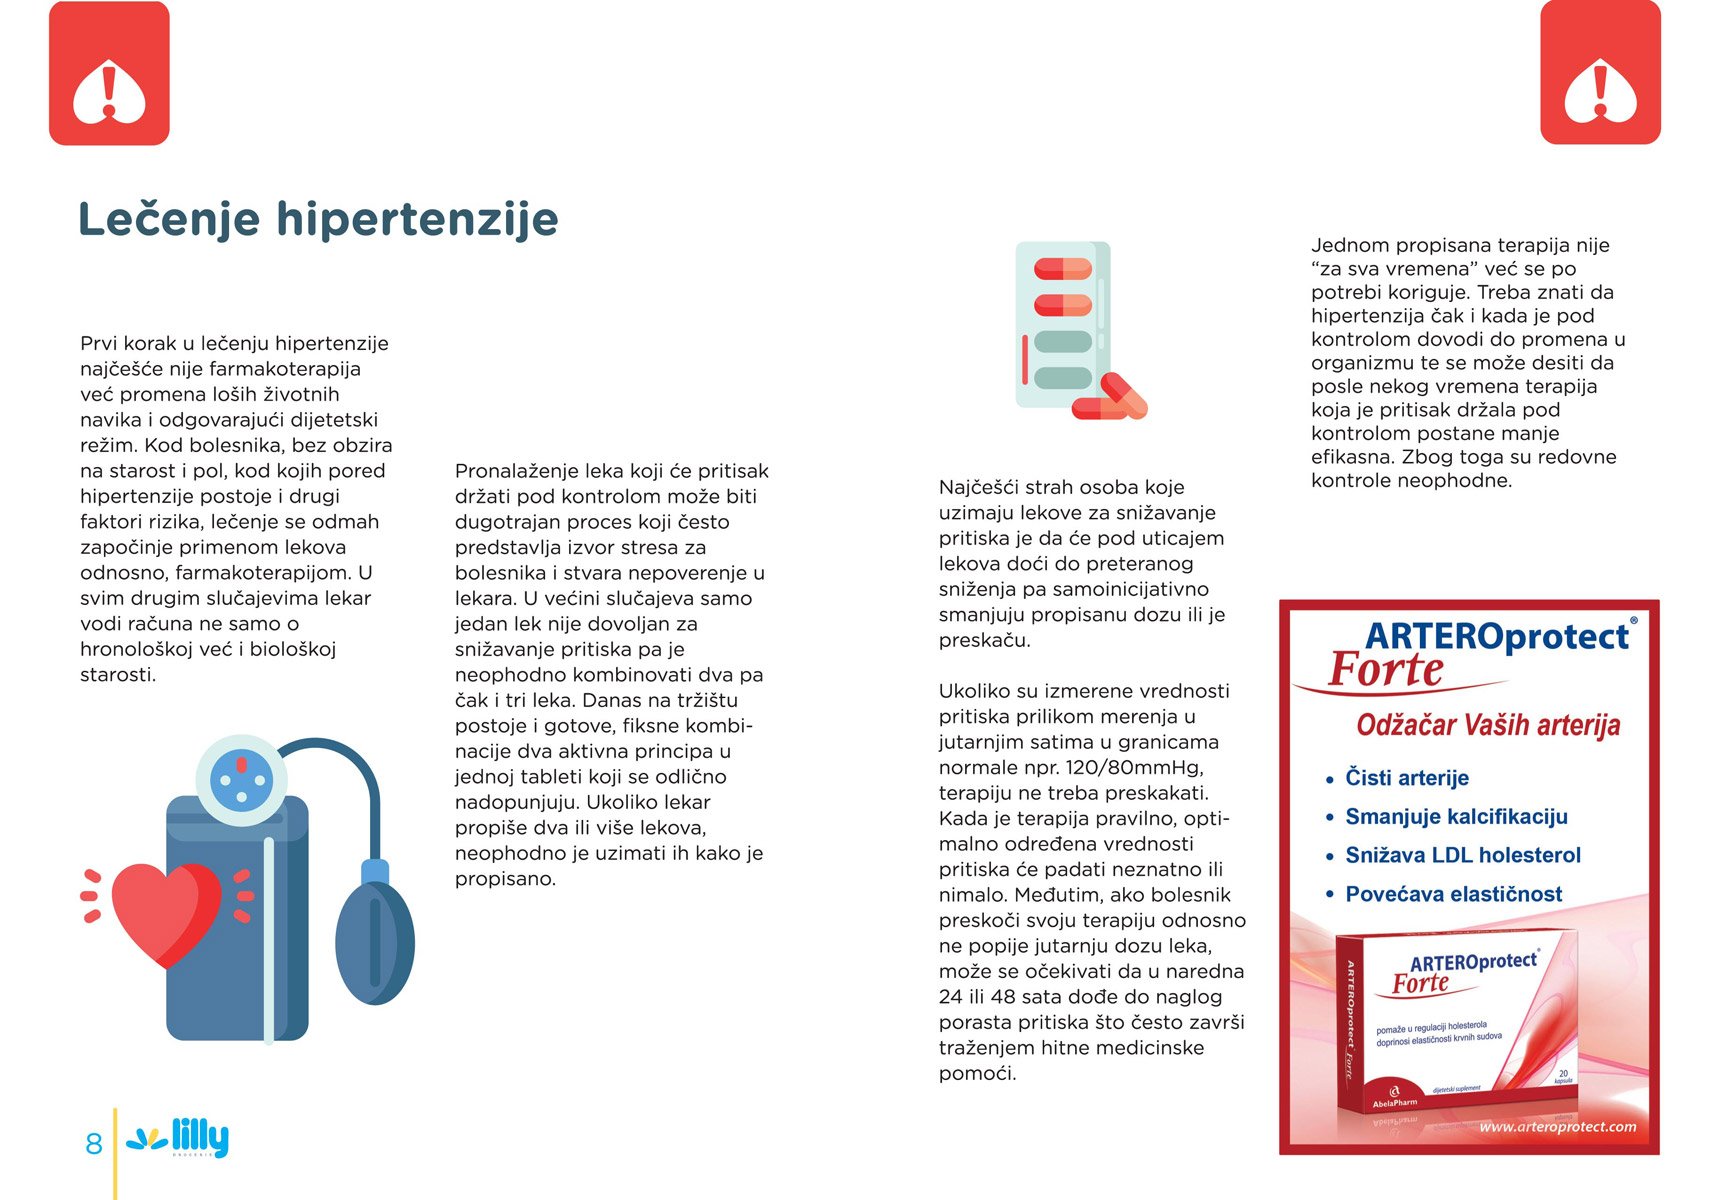 Hipertenzija - tihi ubojica - Poliklinika Analiza